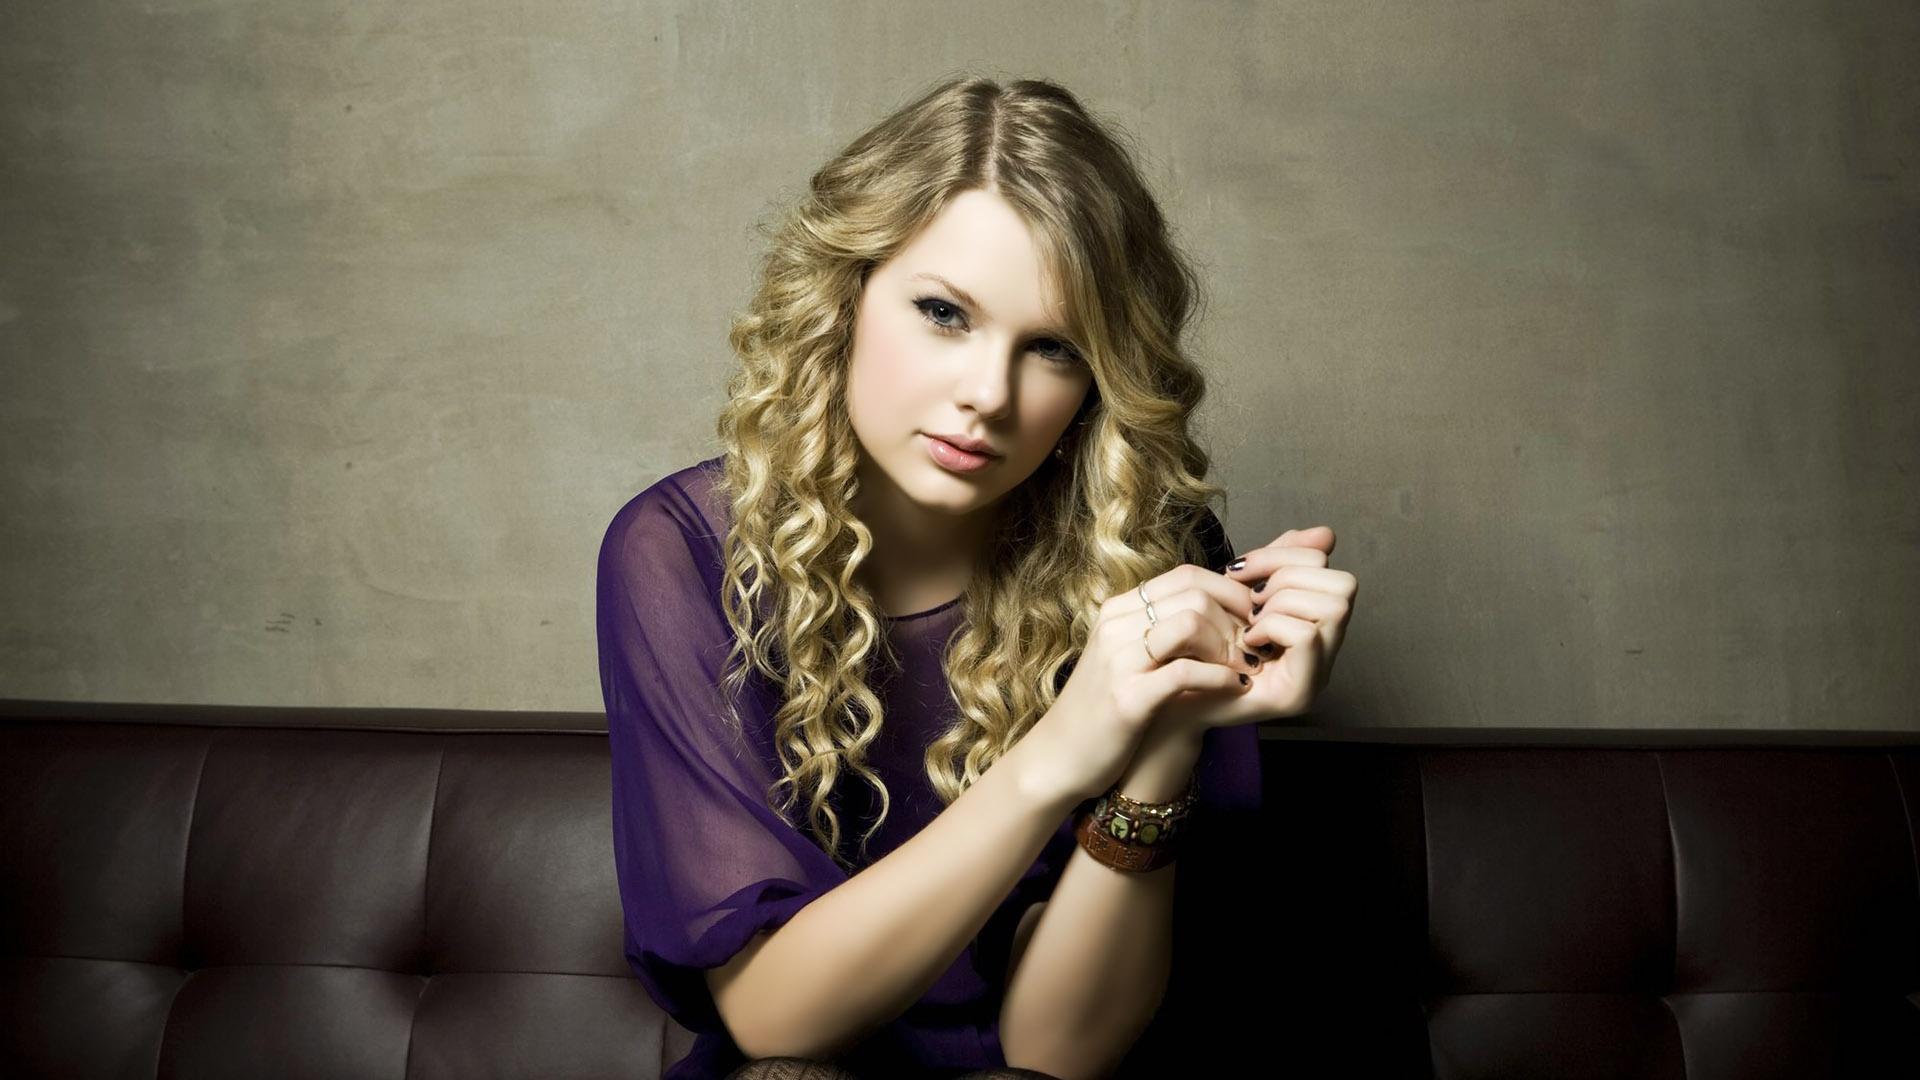 Taylor Swift HD - Taylor Swift Wallpaper (25909807) - Fanpop